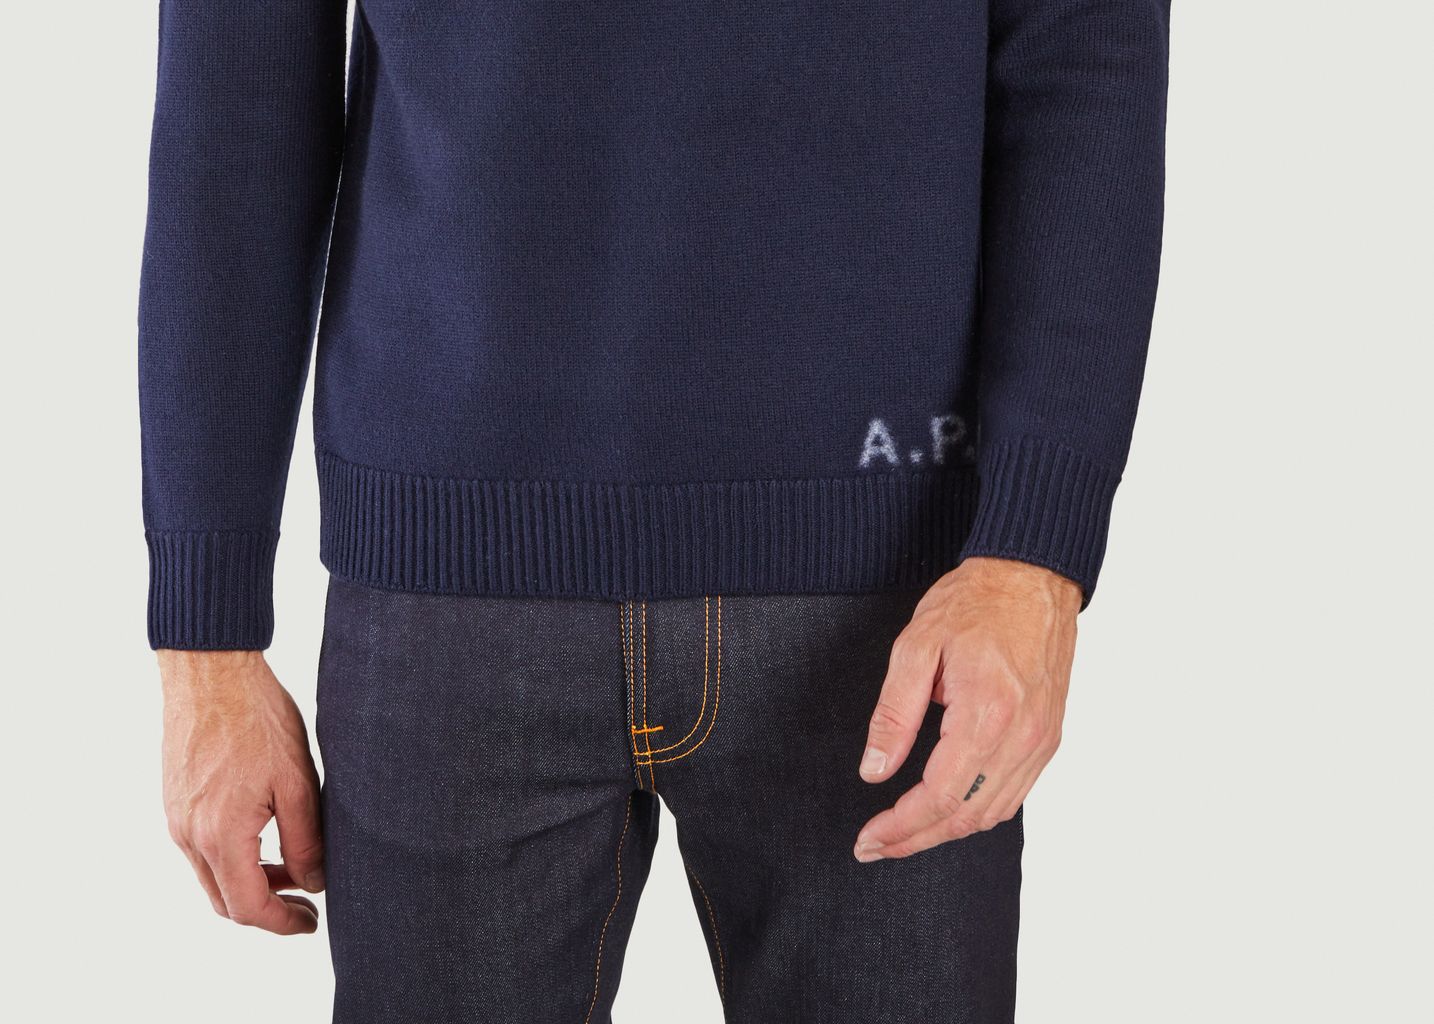 Edward sweater - A.P.C.